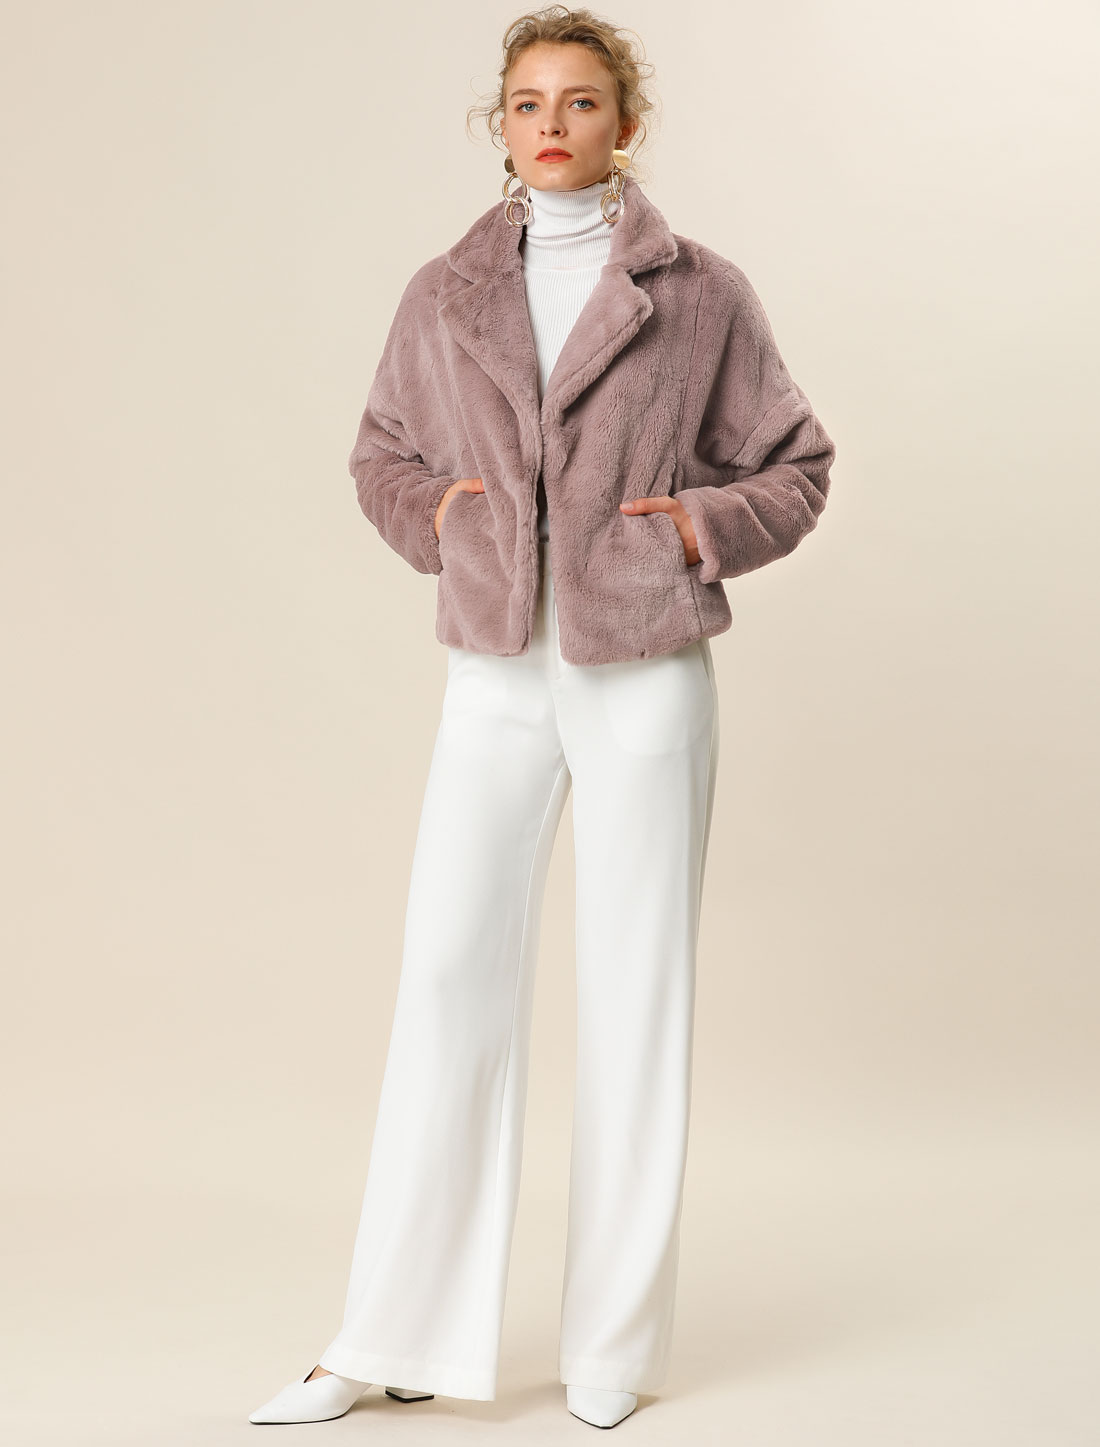 Unique Bargains Allegra K Women's Fashion Faux Fur Coat Short Crop Jacket